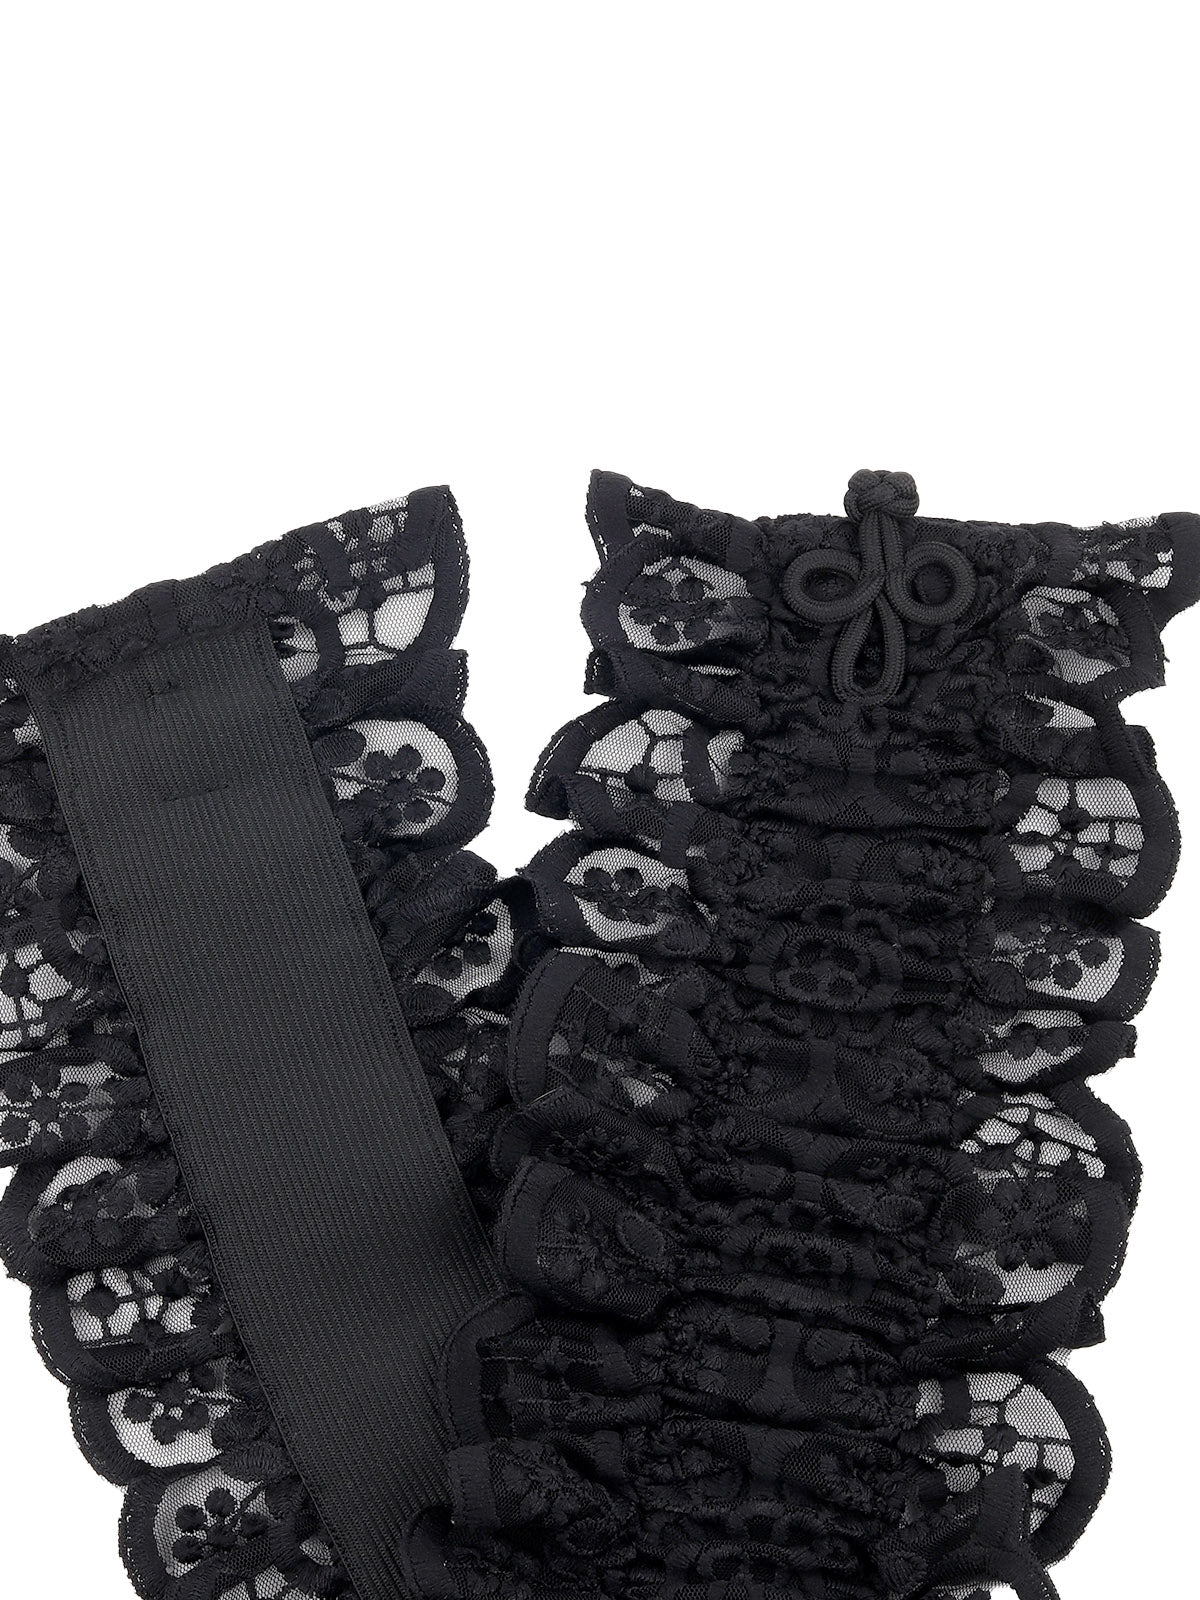 Odette Women Hi-Fashion Black Ruched Lace Belt